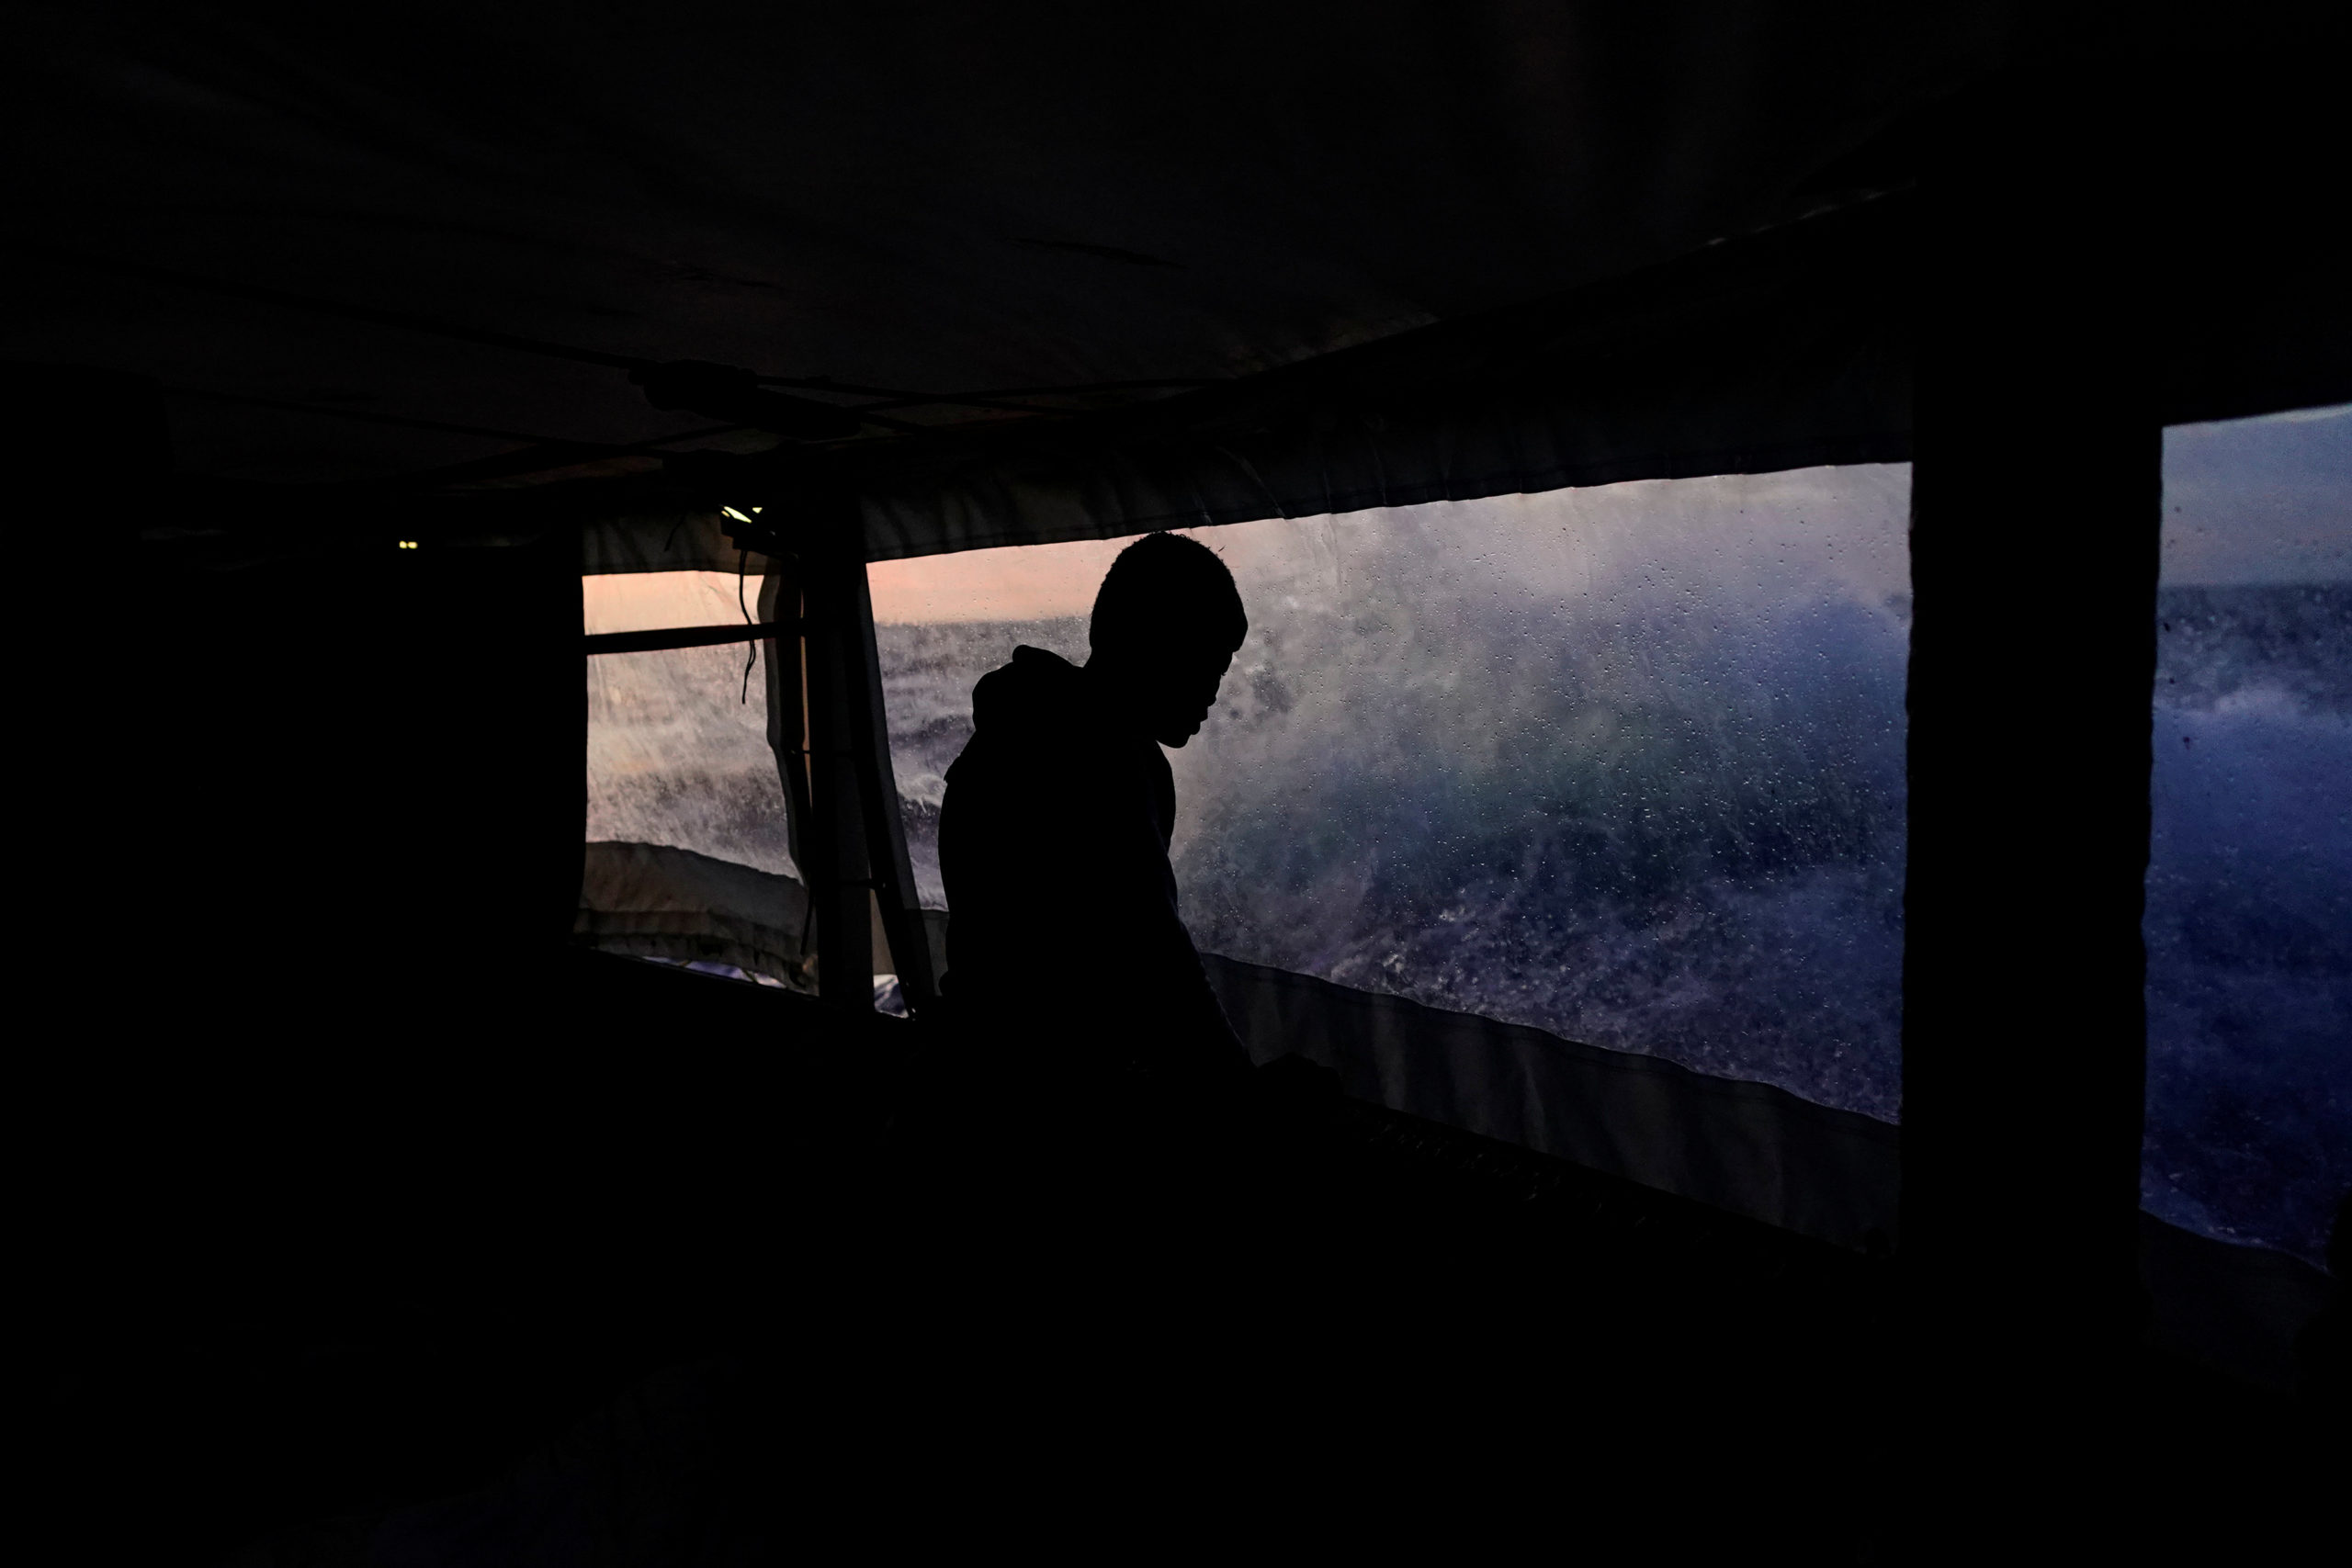 Les autorités italiennes ont accepté de laisser accoster le navire humanitaire Open Arms avec 62 migrants africains à bord, a déclaré dimanche un dirigeant de l'ONG espagnole, précisant que le bateau devrait arriver mardi matin au port de Tarente. /Photo prise le 23 novembre 2019/REUTERS/Juan Medina